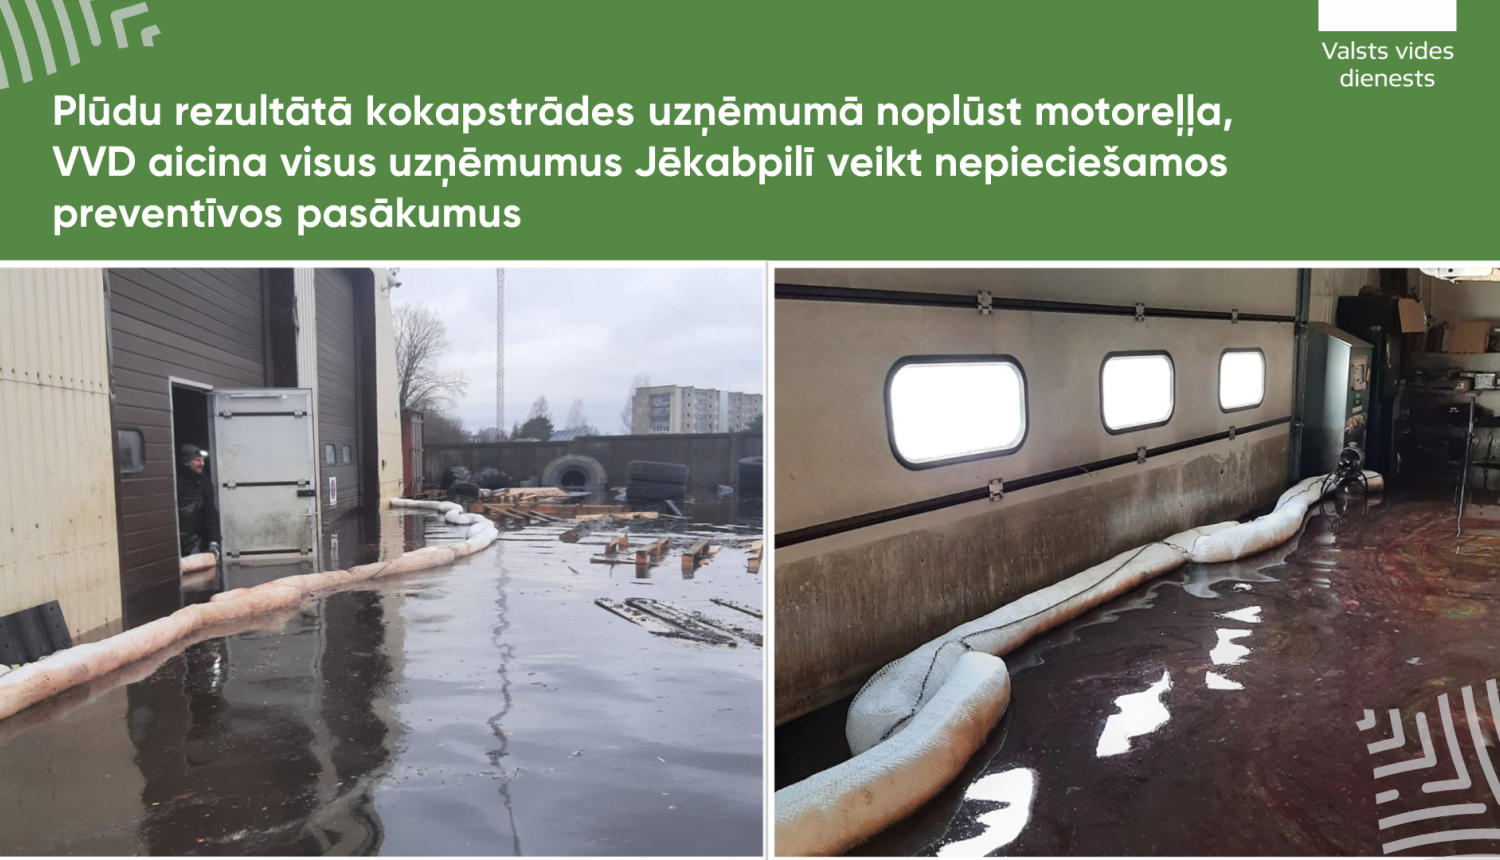 Plūdu rezultātā kokapstrādes uzņēmumā noplūst motoreļļa, VVD aicina visus uzņēmumus Jēkabpilī veikt nepieciešamos preventīvos pasākumus